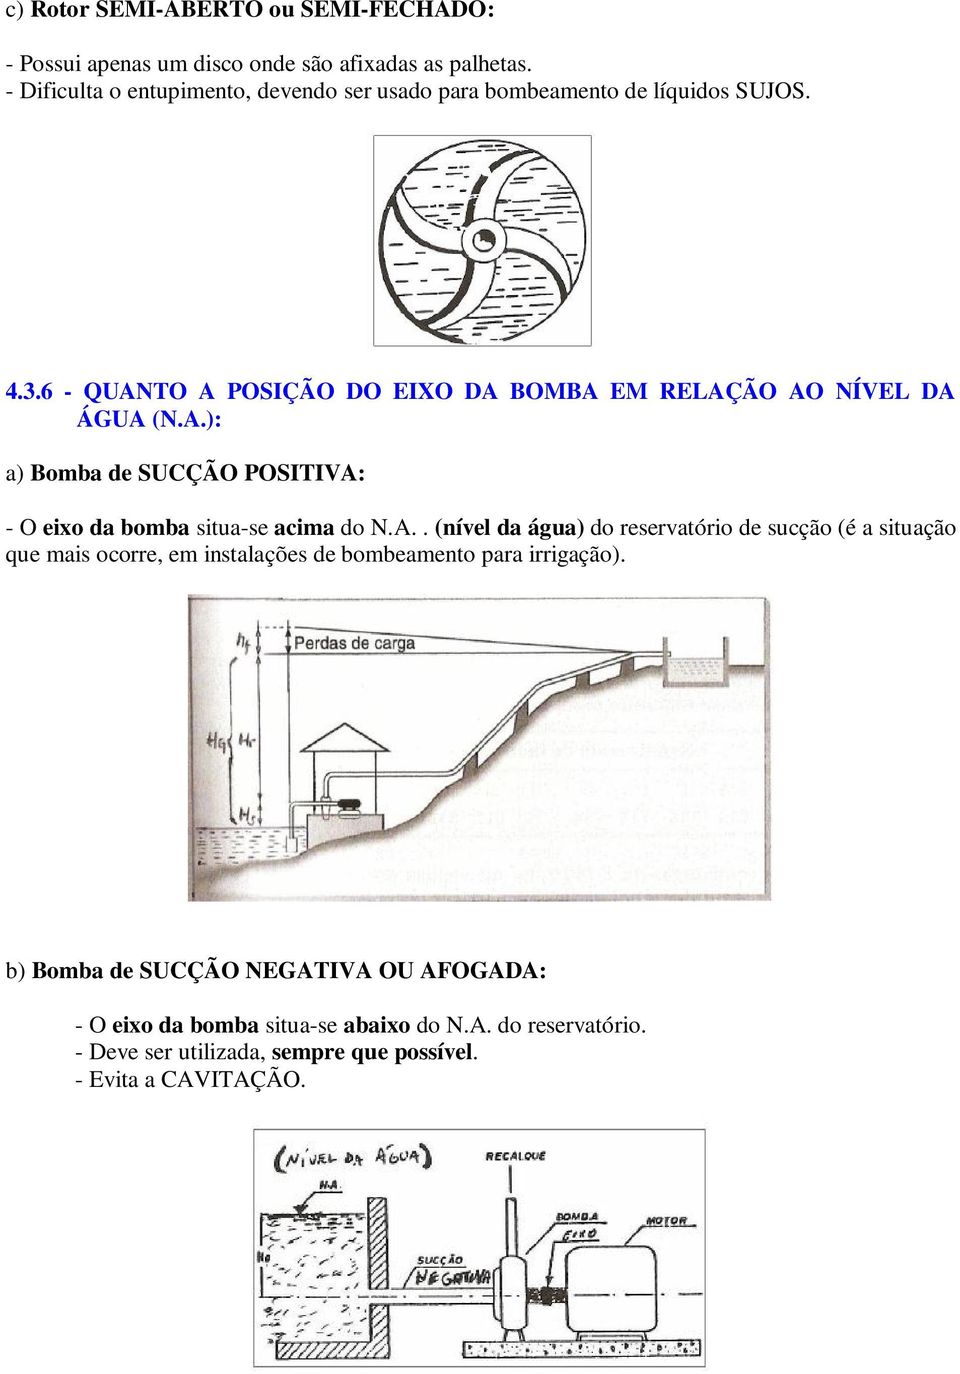 6 - QUANTO A POSIÇÃO DO EIXO DA BOMBA EM RELAÇÃO AO NÍVEL DA ÁGUA (N.A.): a) Bomba de SUCÇÃO POSITIVA: - O eixo da bomba situa-se acima do N.A.. (nível da água) do reservatório de sucção (é a situação que mais ocorre, em instalações de bombeamento para irrigação).